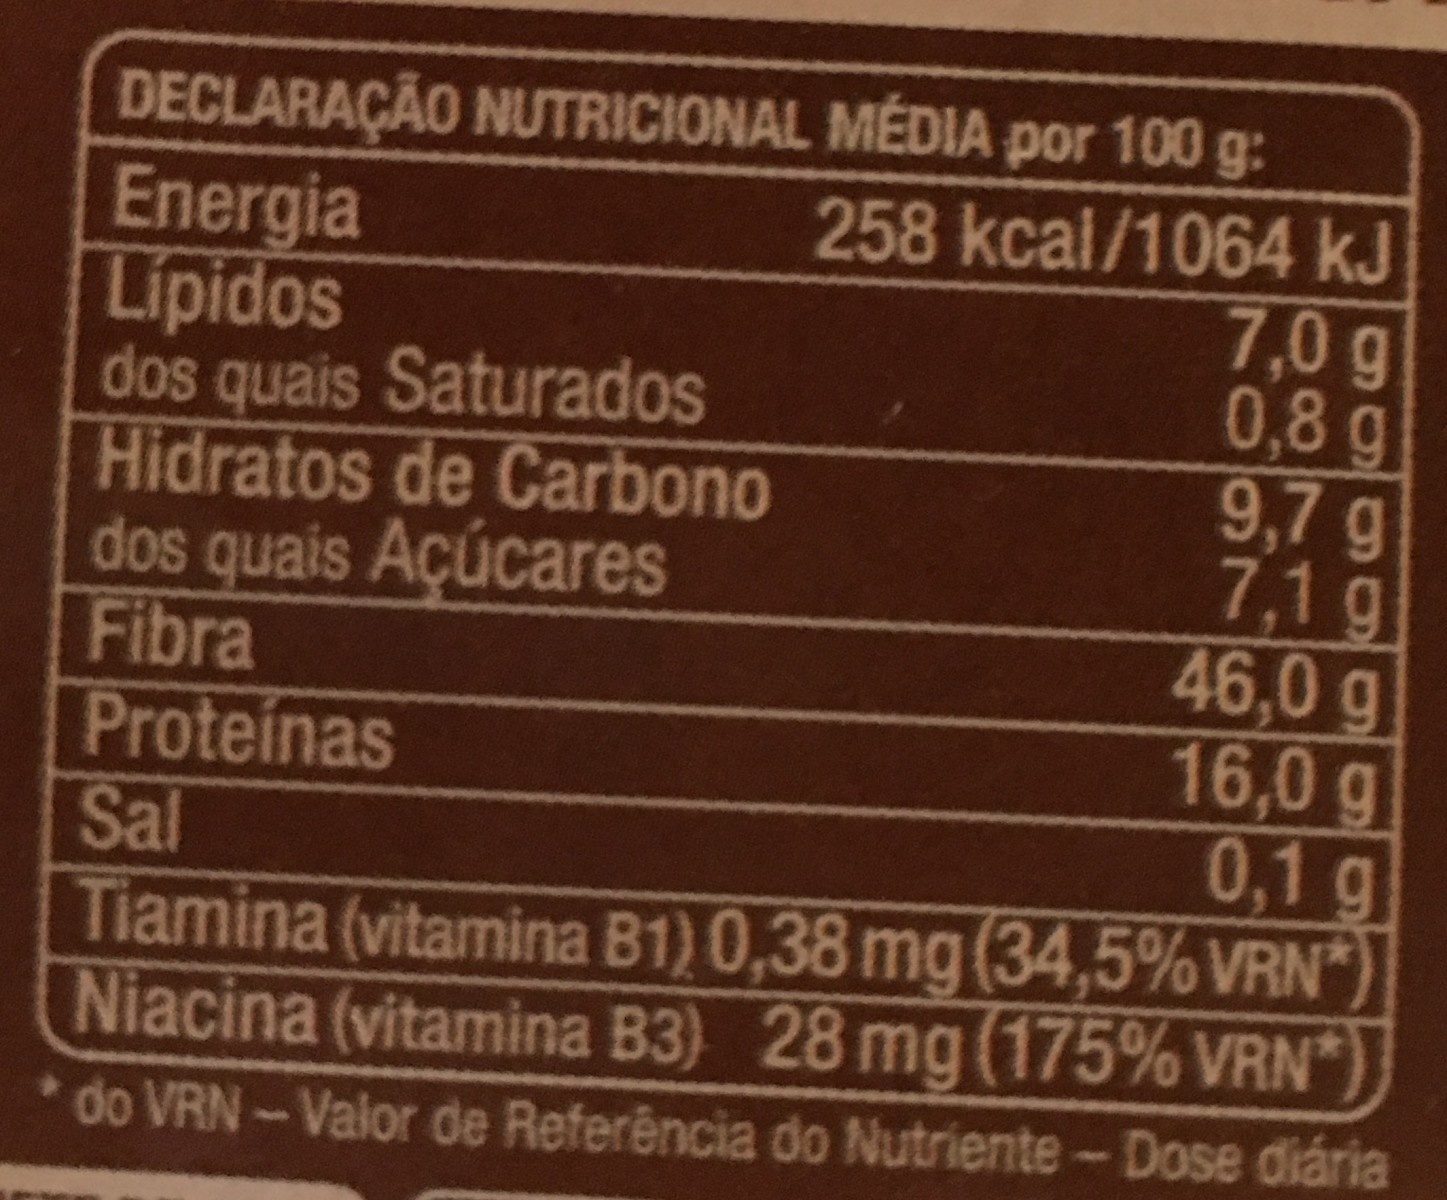 Farelo de trigo - Información nutricional - pt